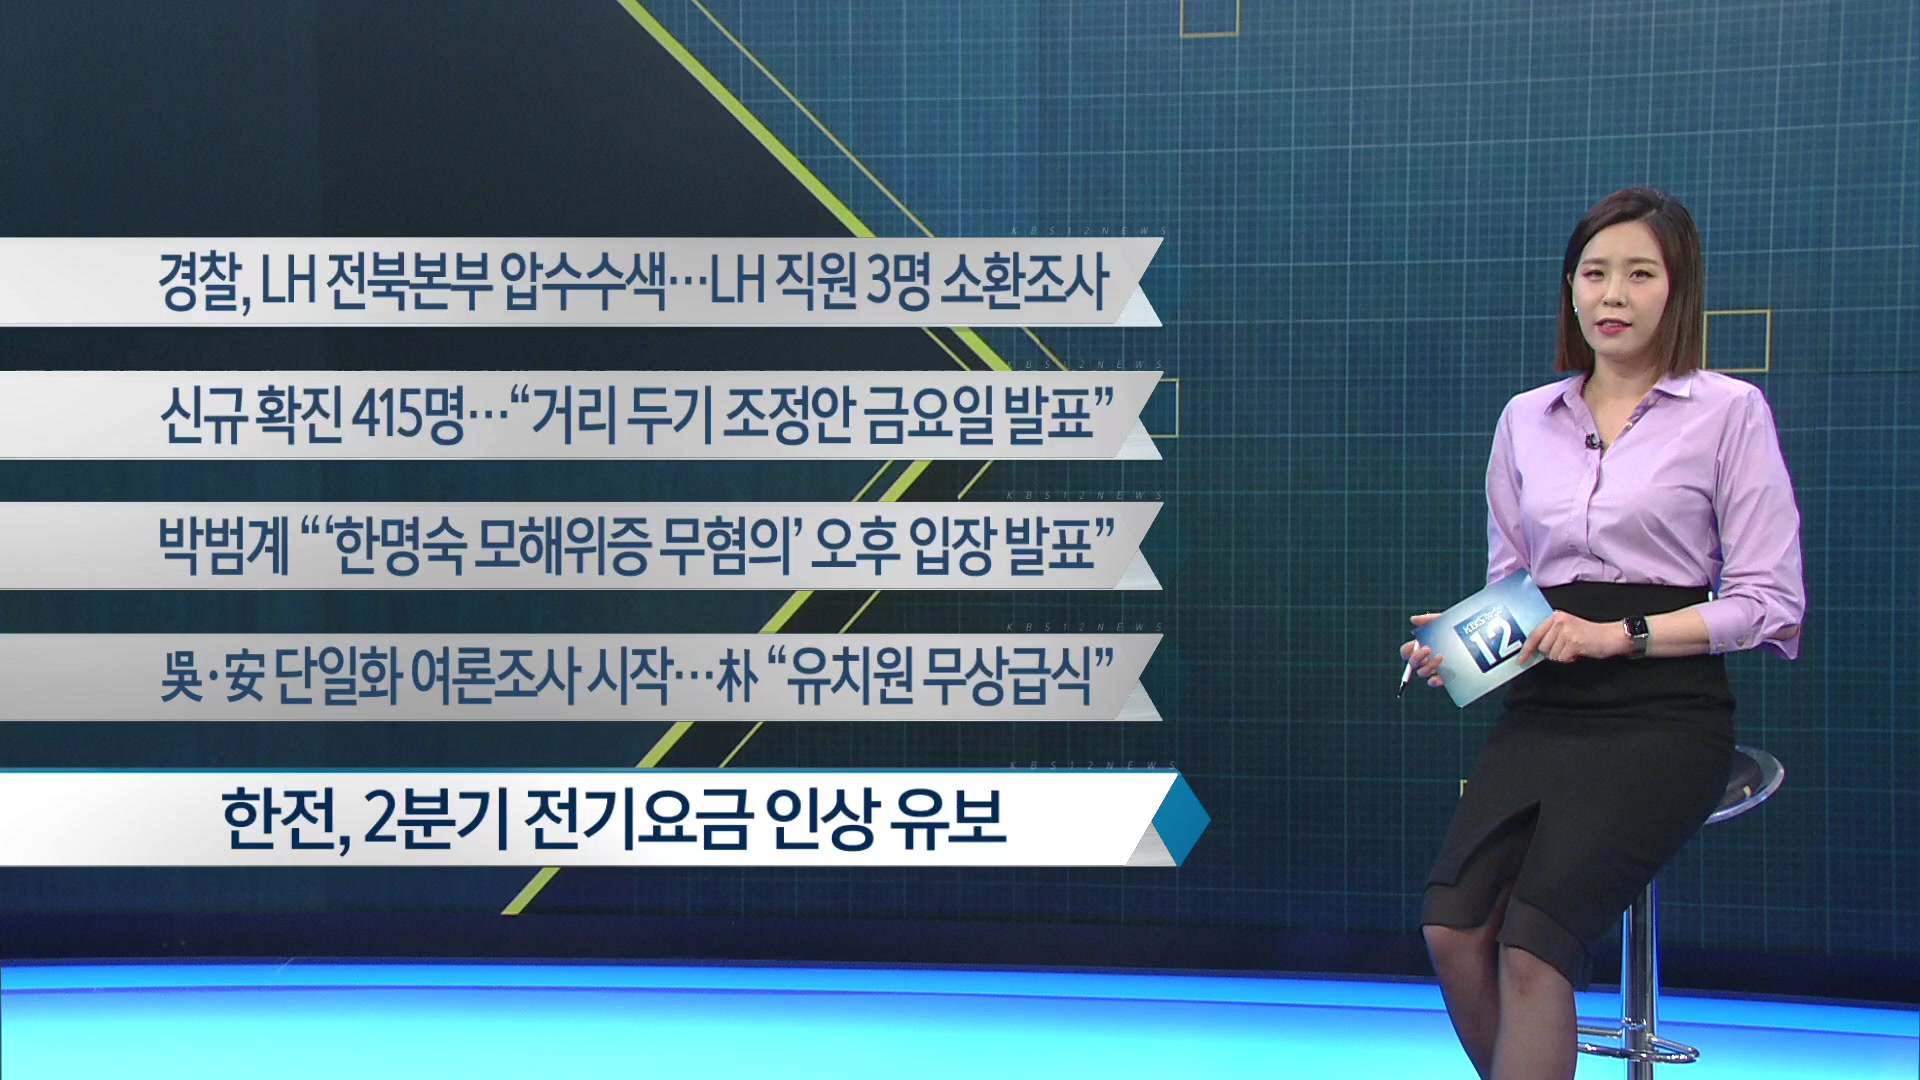 [이 시각 주요뉴스] 경찰, LH 전북본부 압수수색…LH 직원 3명 소환조사 외